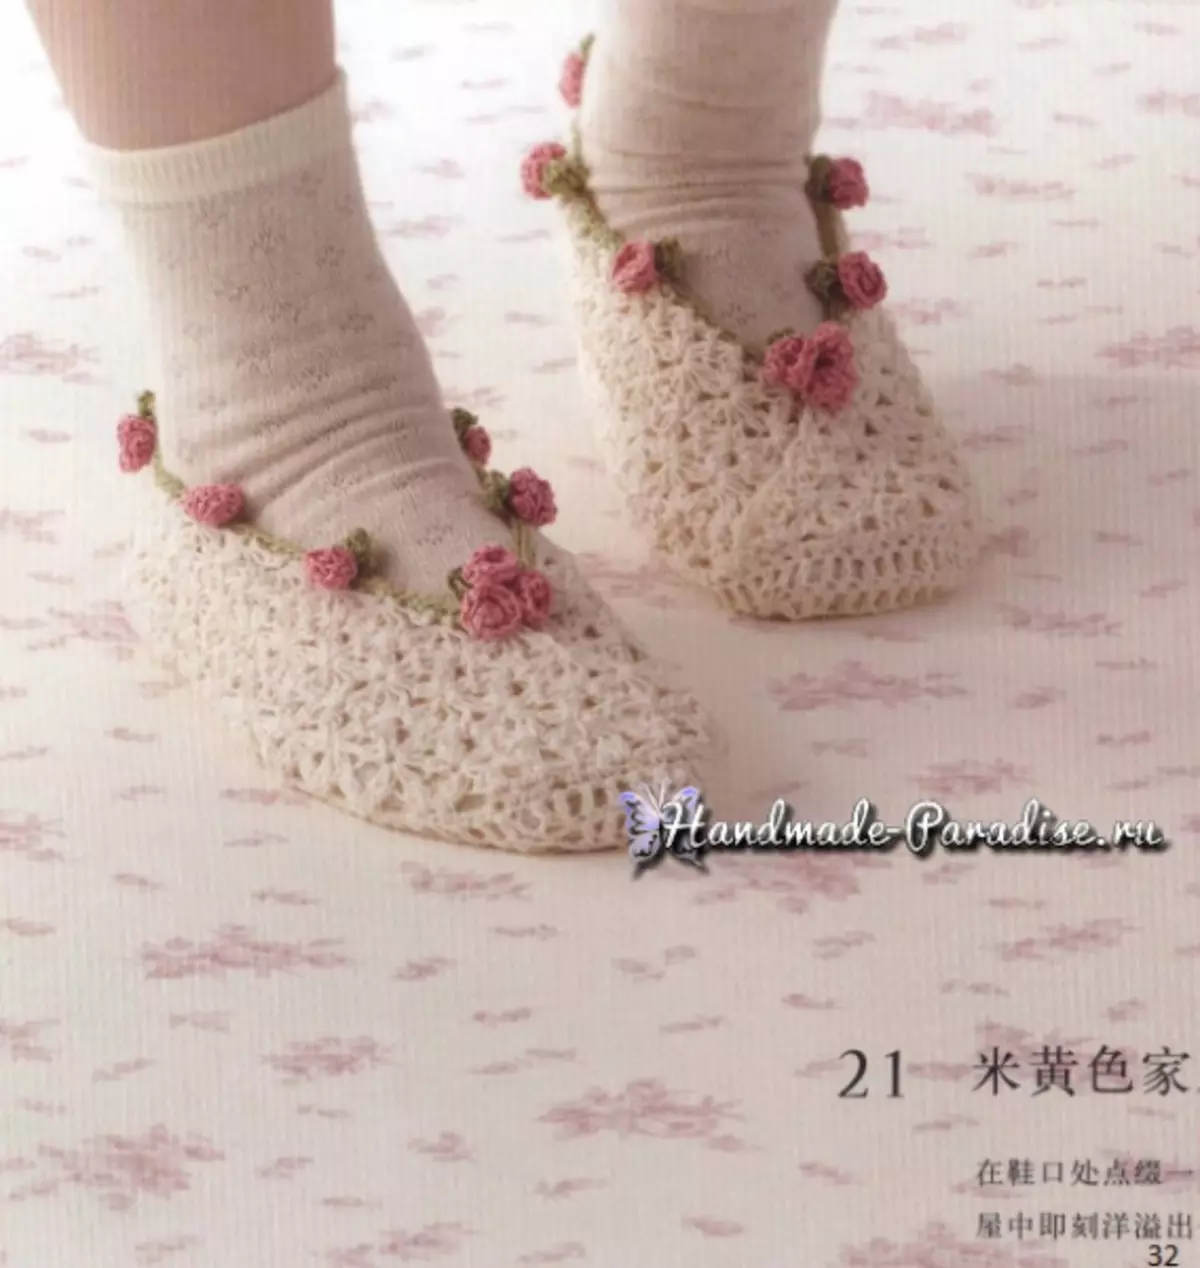 Roses Crochet. Revista japonesa amb esquemes